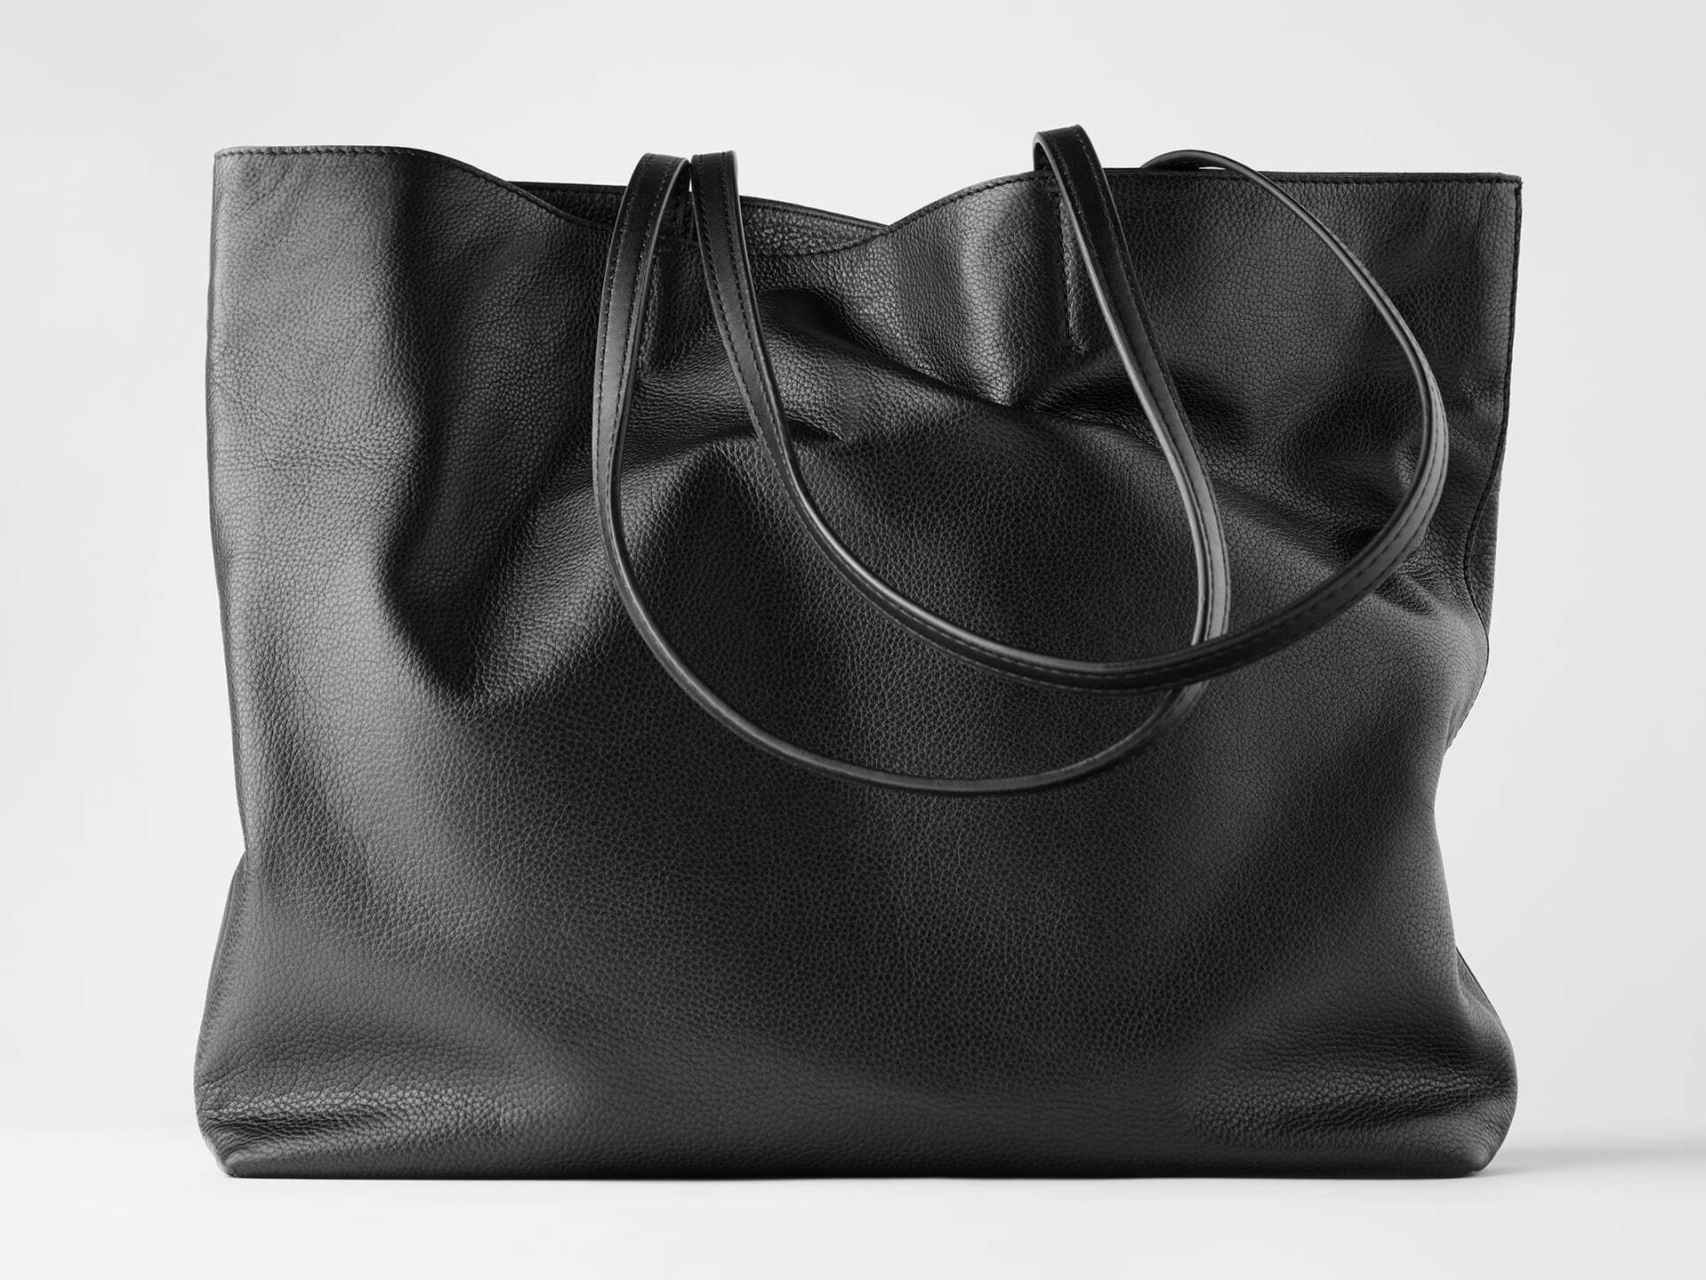 El bolso 'shopper' de Zara que se puede personalizar está valorado en 59,95 euros.